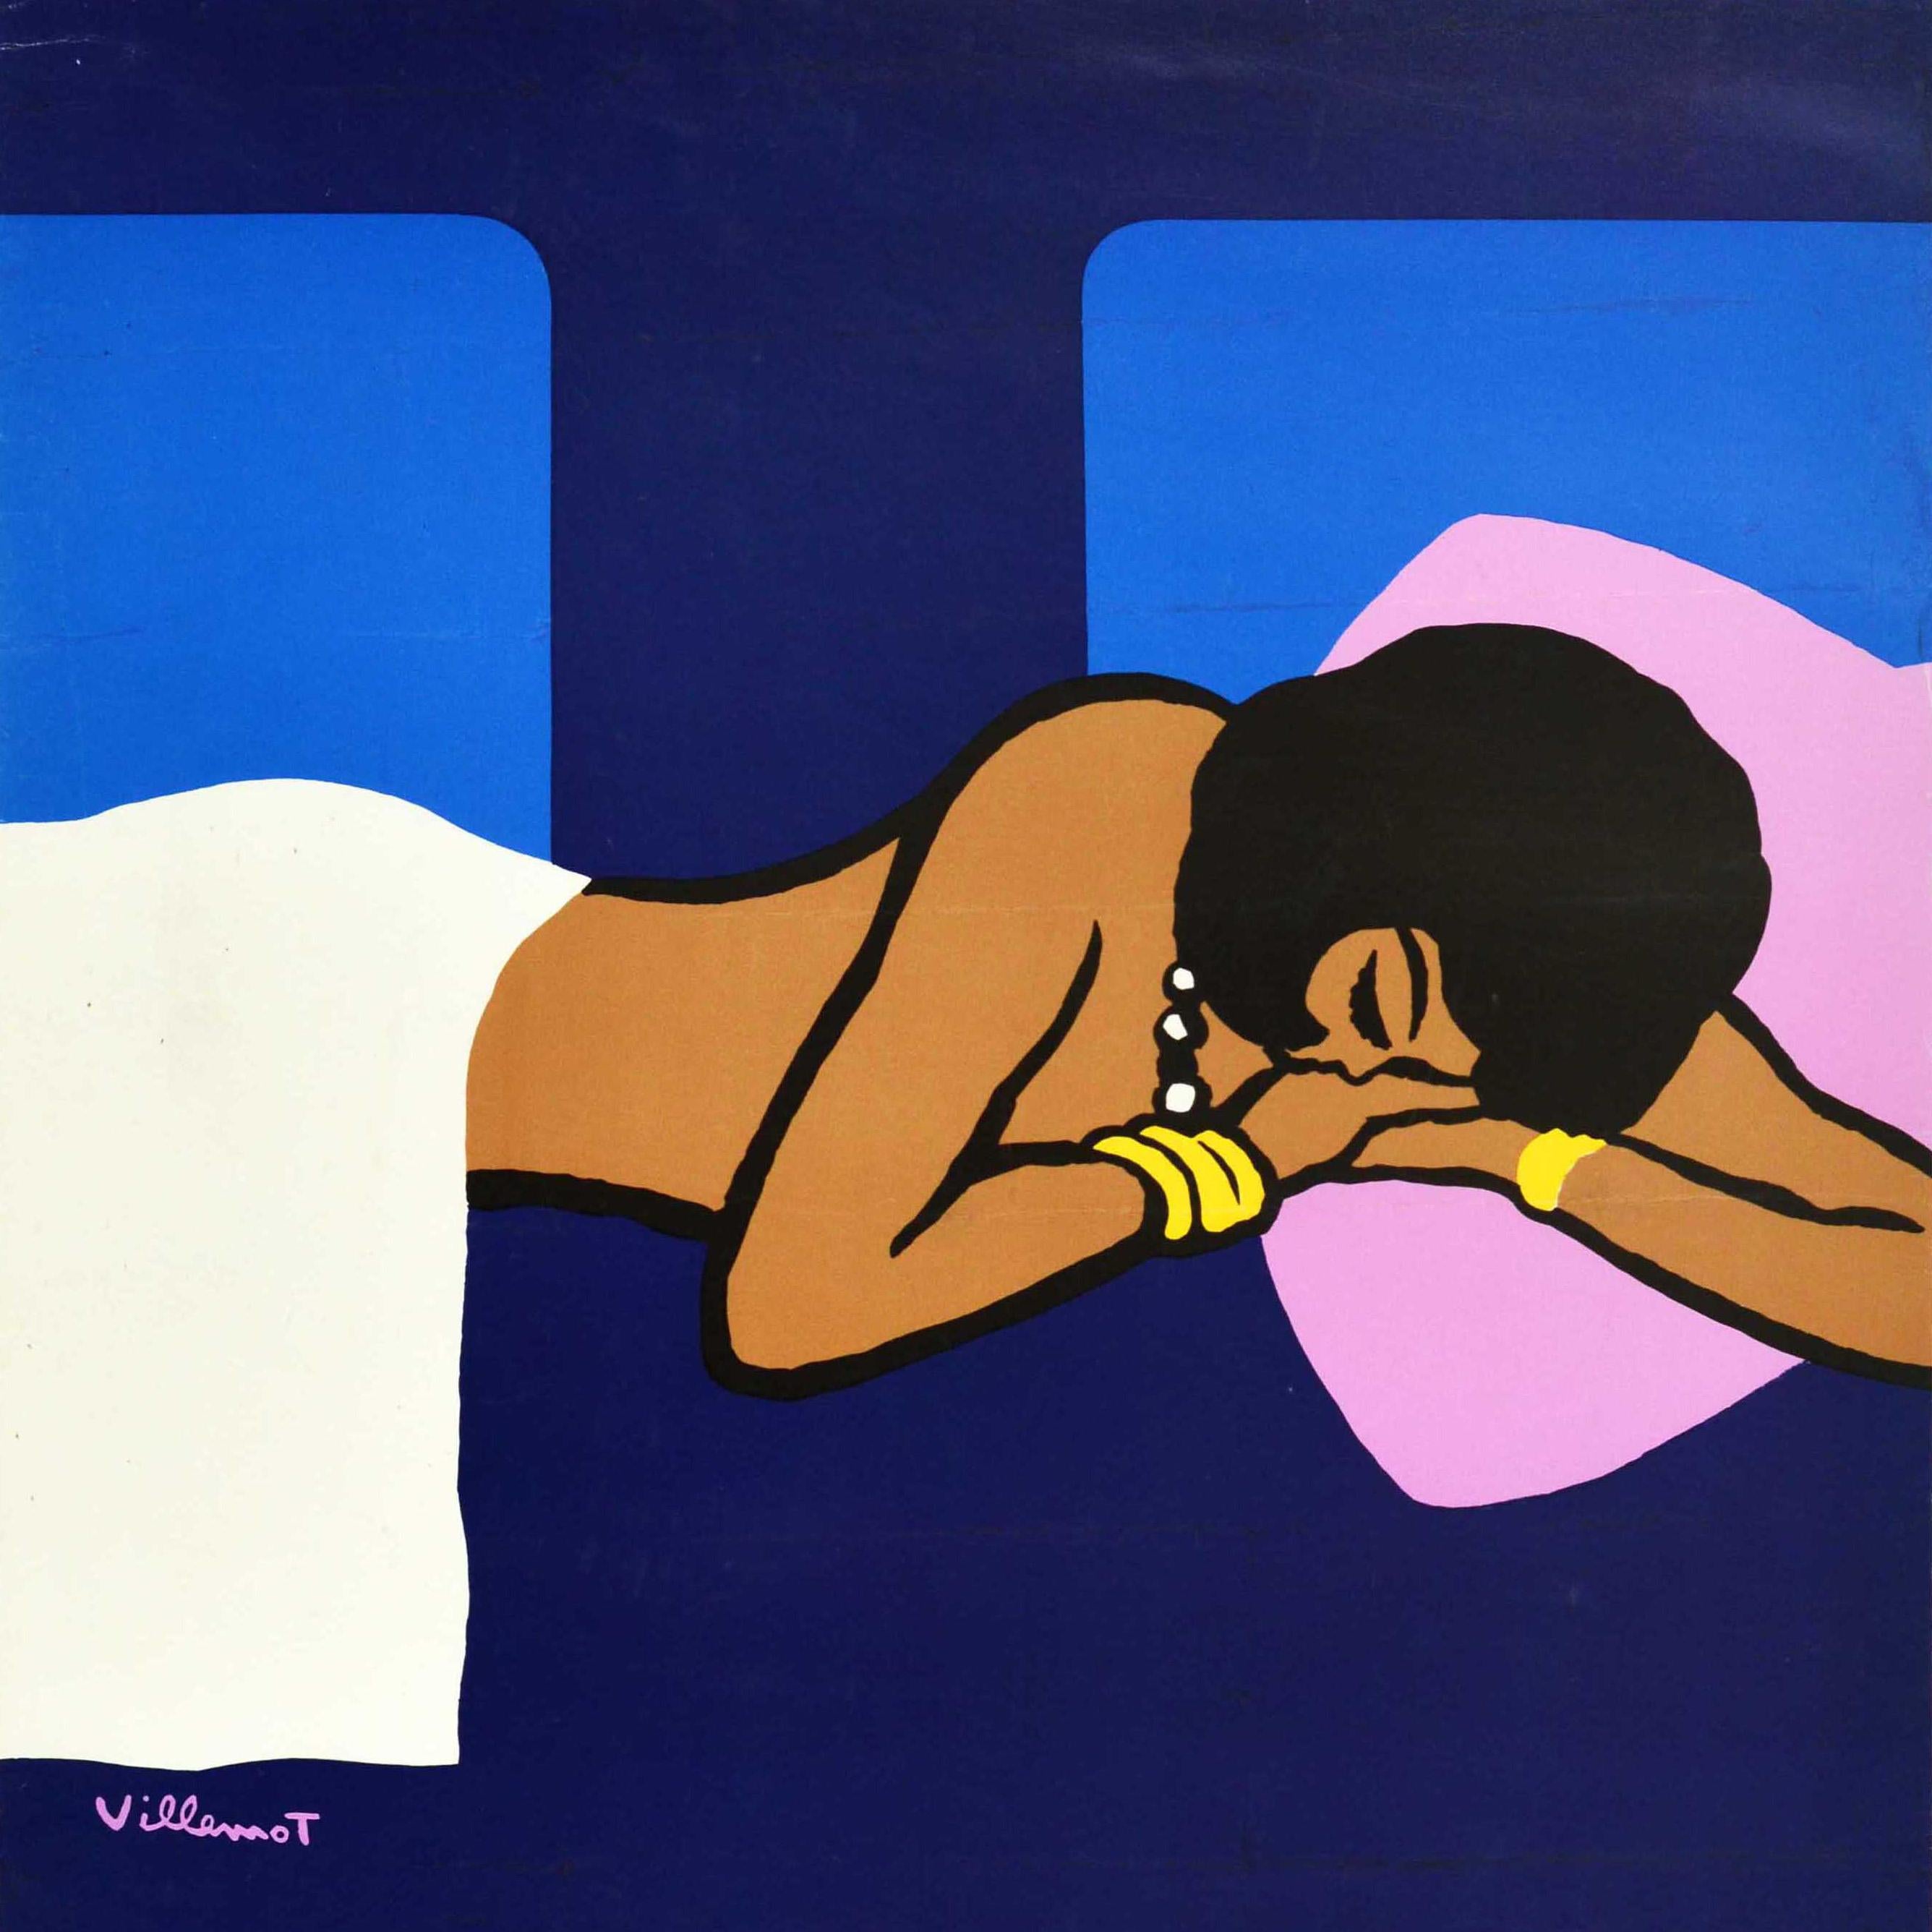 Affiche publicitaire originale publiée par la SNCF pour promouvoir les voitures-lits disponibles sur ses services de nuit - Une nuit en voiture lits - comportant un superbe dessin de l'artiste graphique français Bernard Villemot (1911-1989)